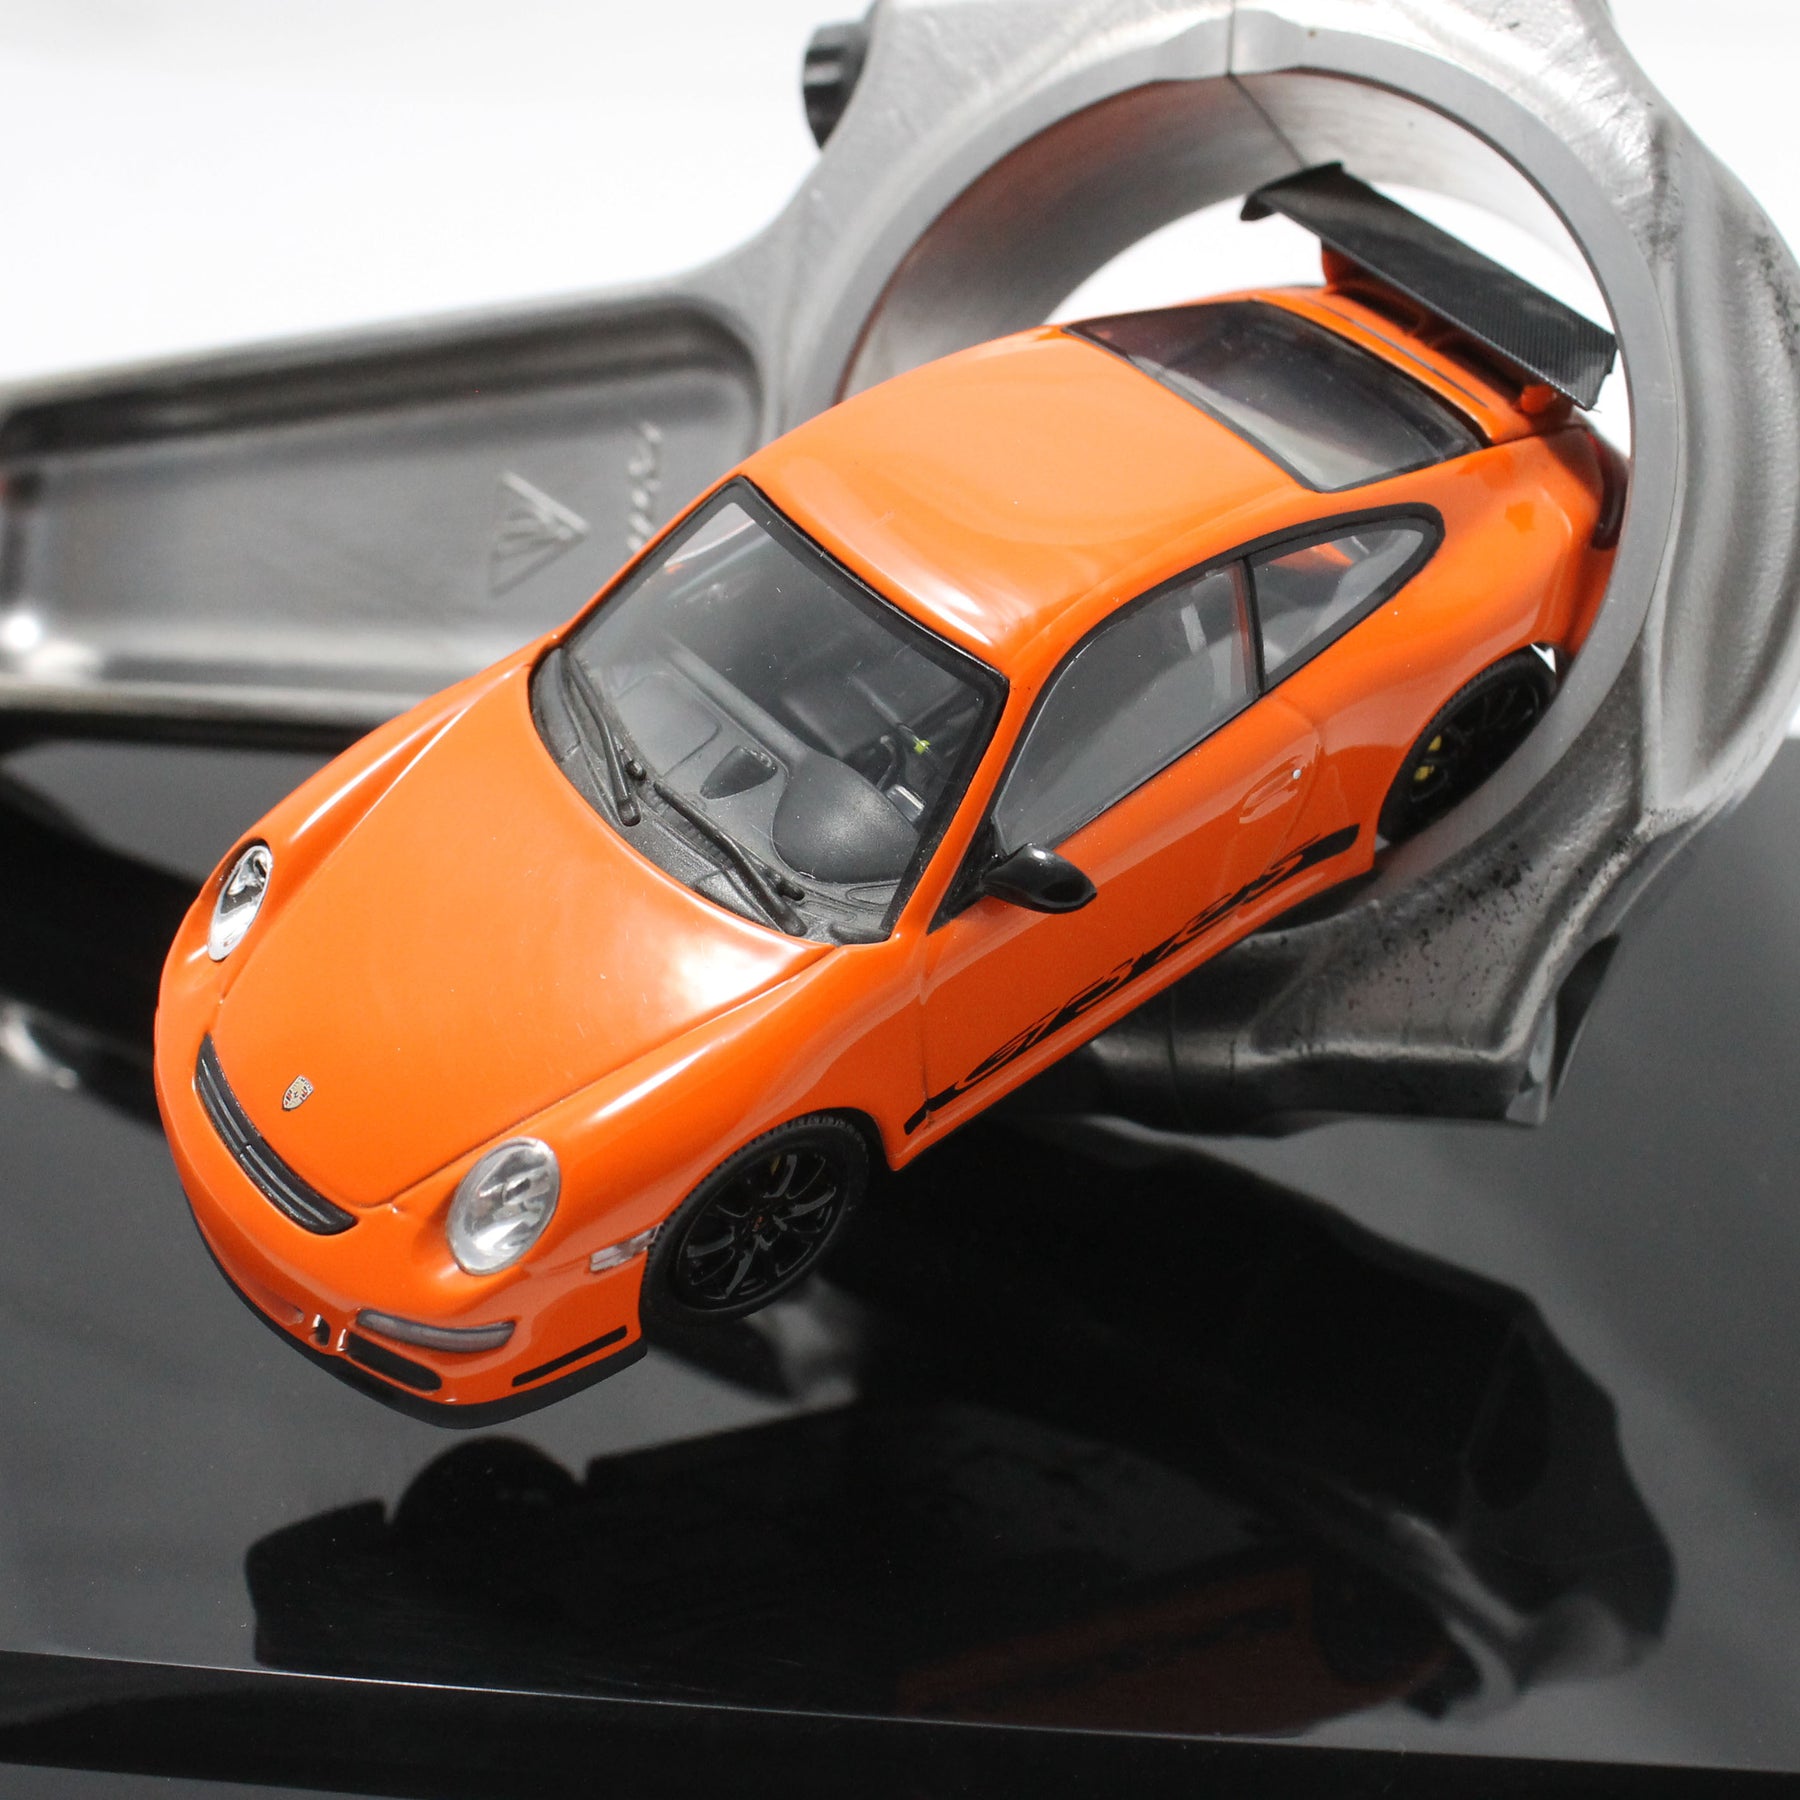 Porsche Desk Model 'Racing Piston'